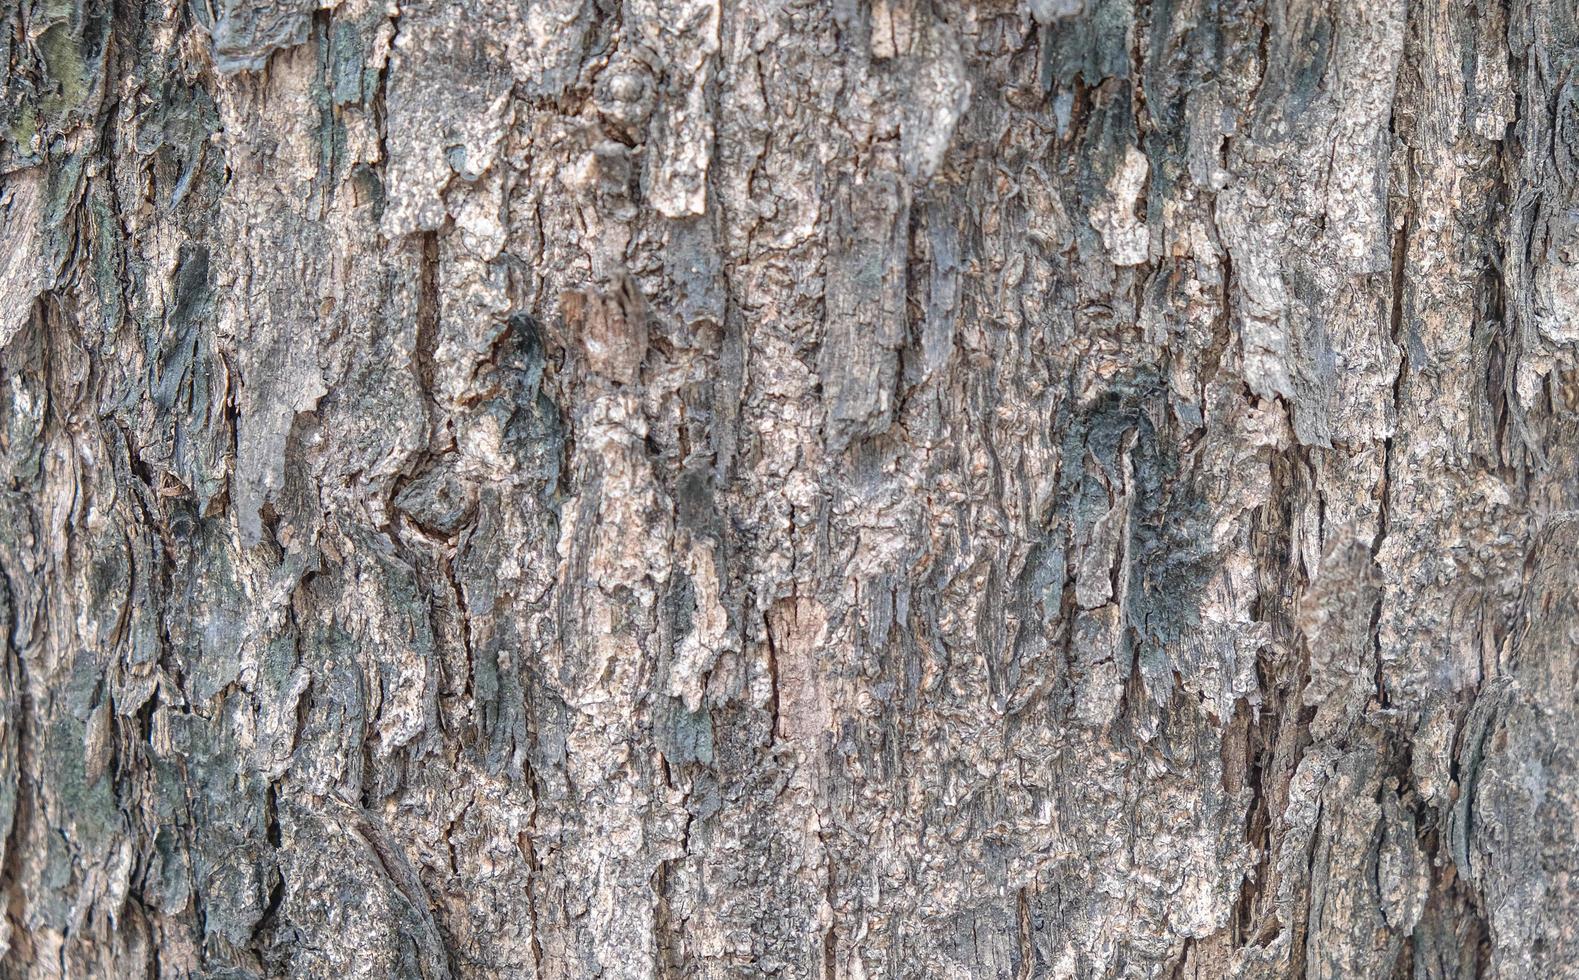 écorce d'arbre texturée photo